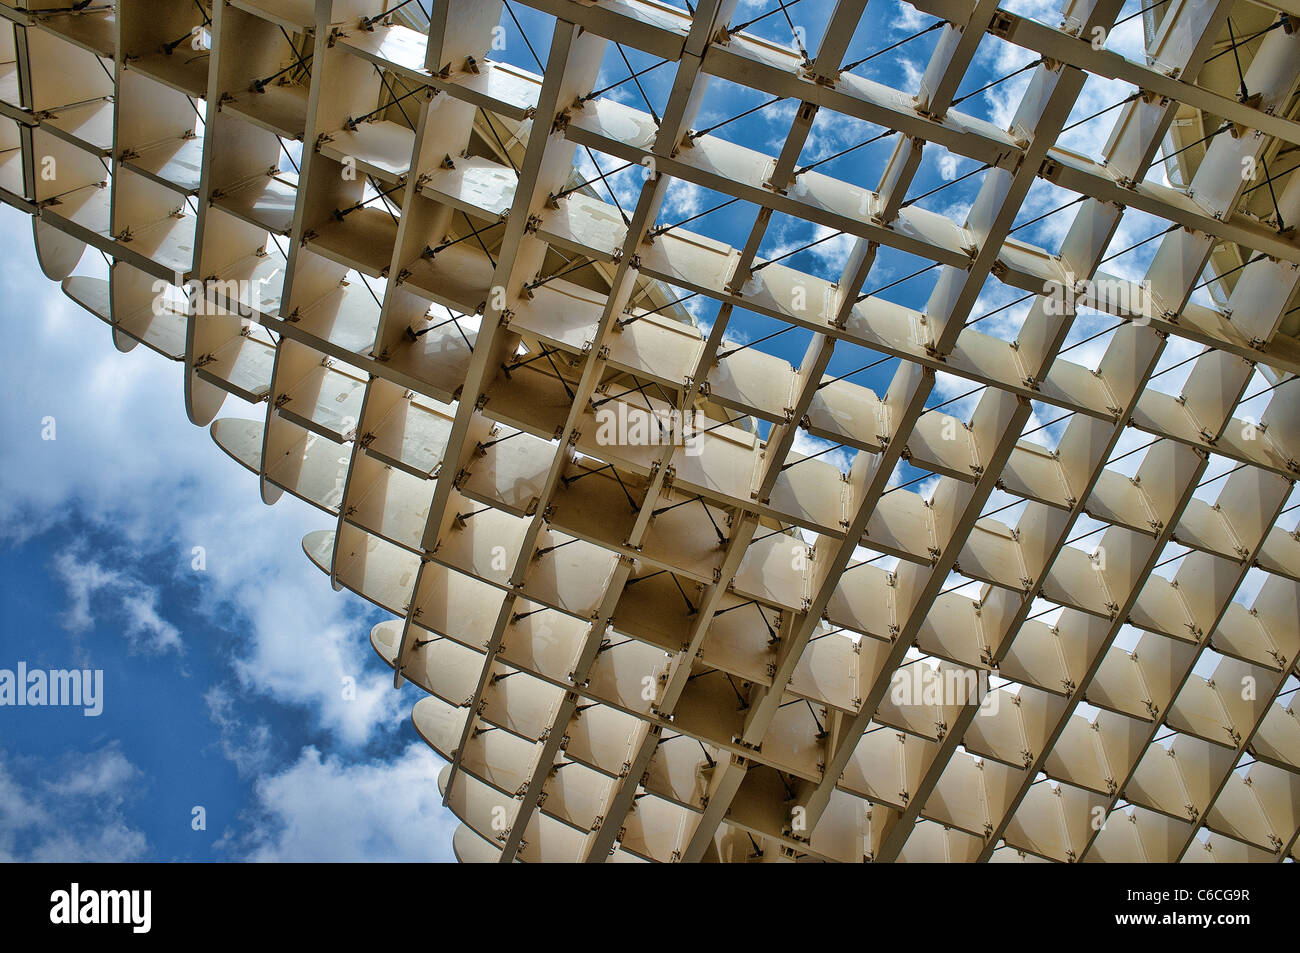 Grille de haut de Metropol Parasol structure, Séville, Espagne Banque D'Images